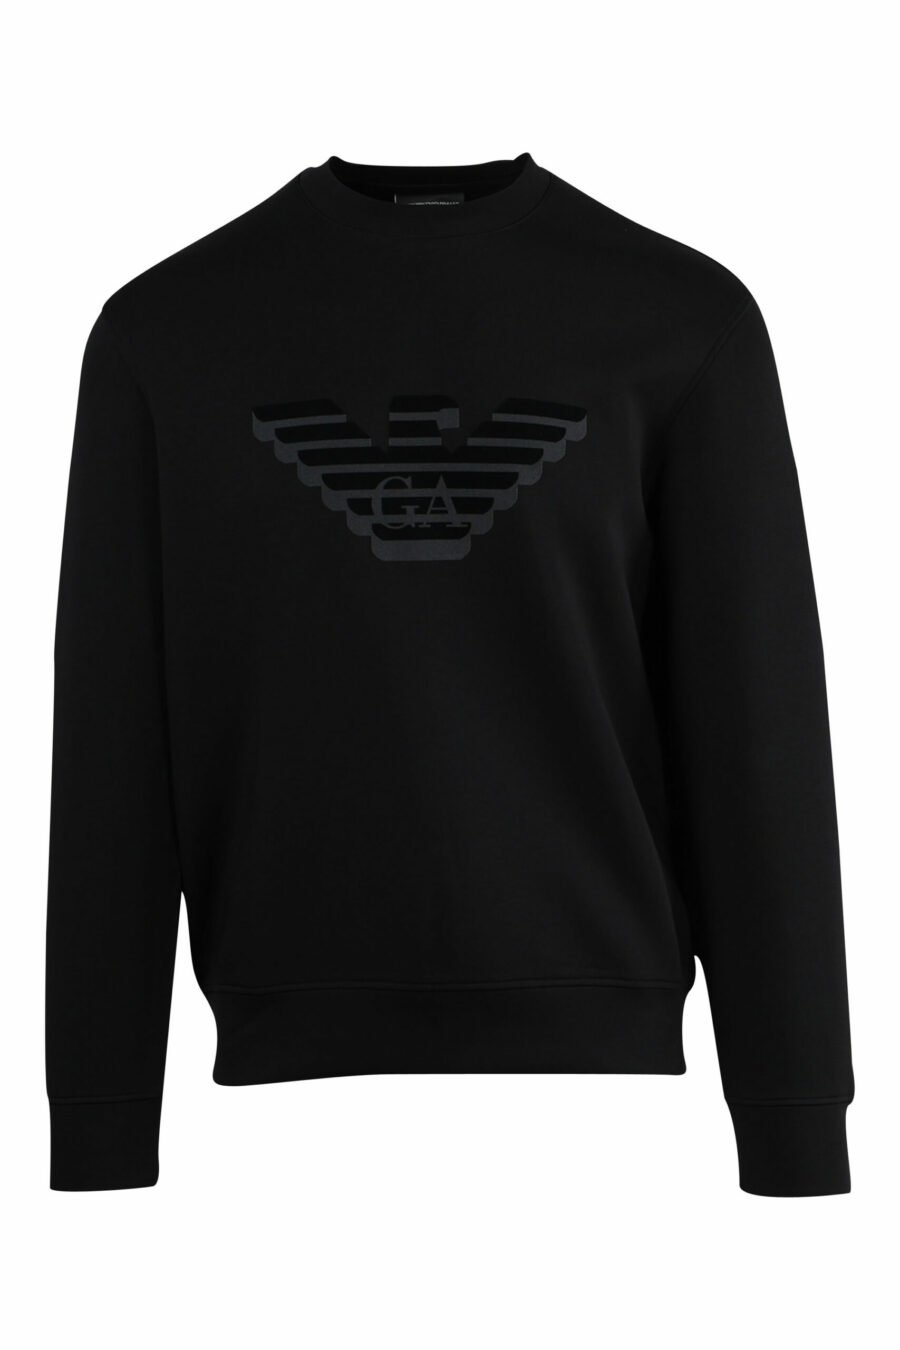 Schwarzes Sweatshirt mit Adler Maxilogo - 8057767552367 1 skaliert